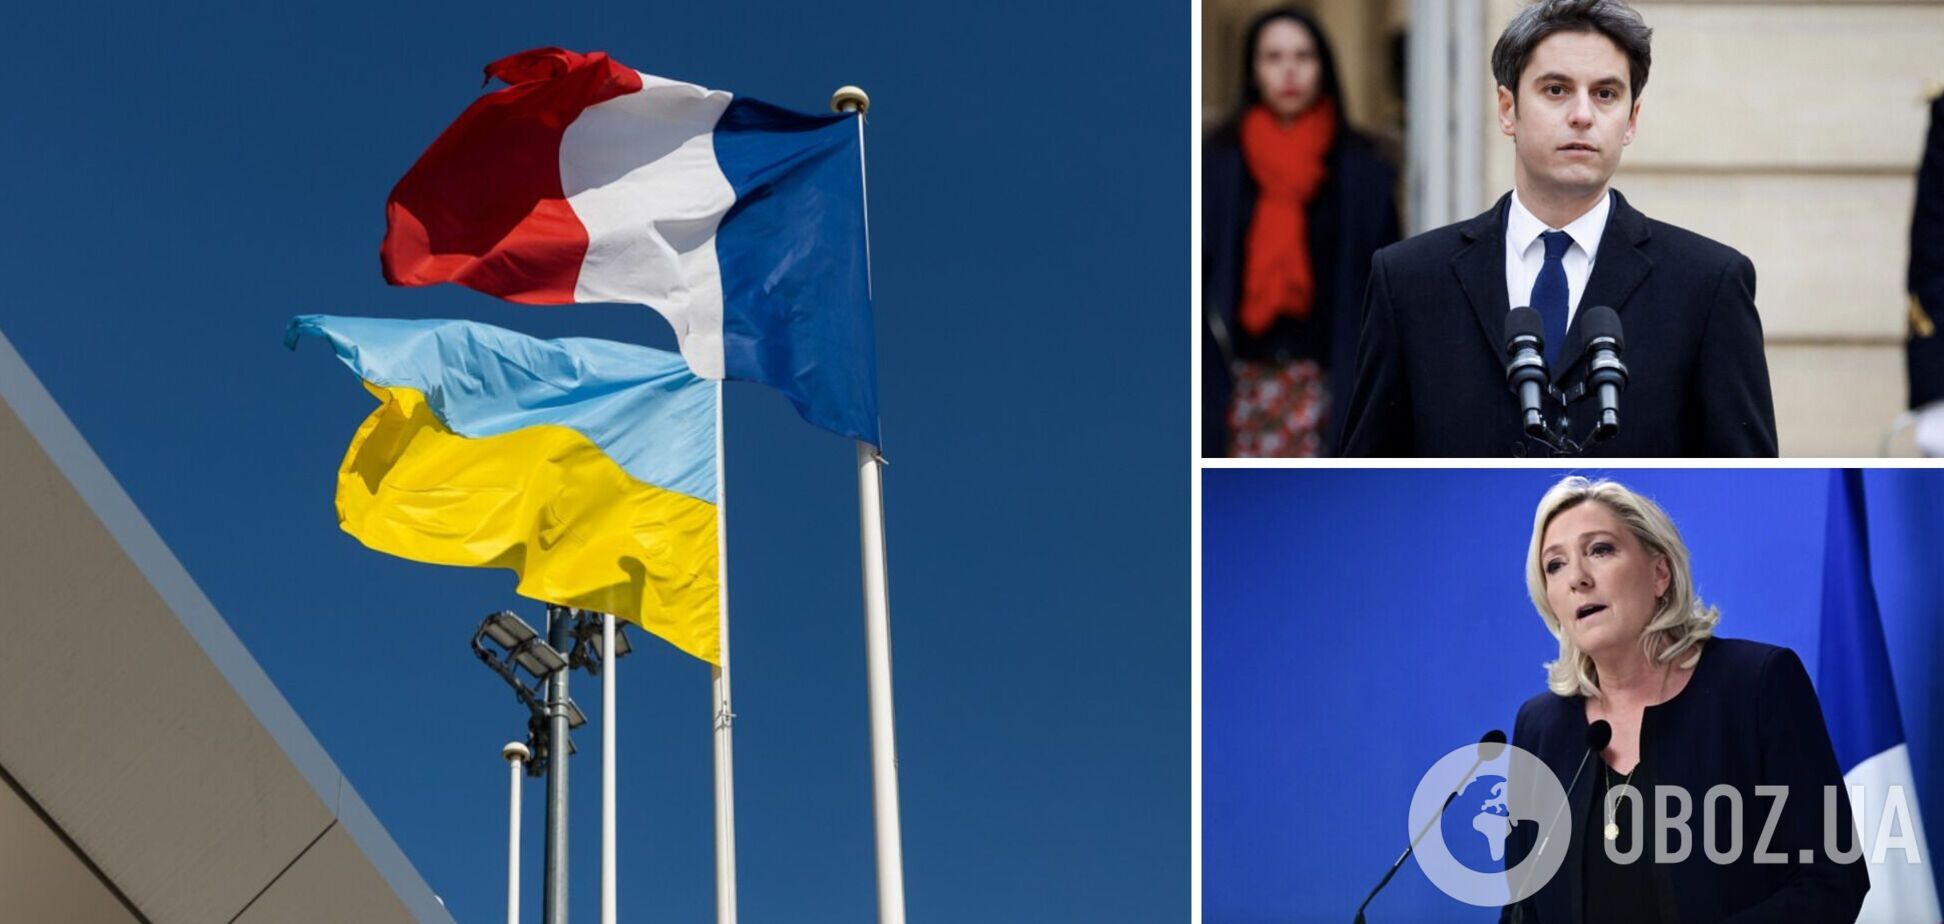 Французские политики поддержали Украину: Атталь заговорил по-украински, а Ле Пен неожиданно изменила риторику. Видео